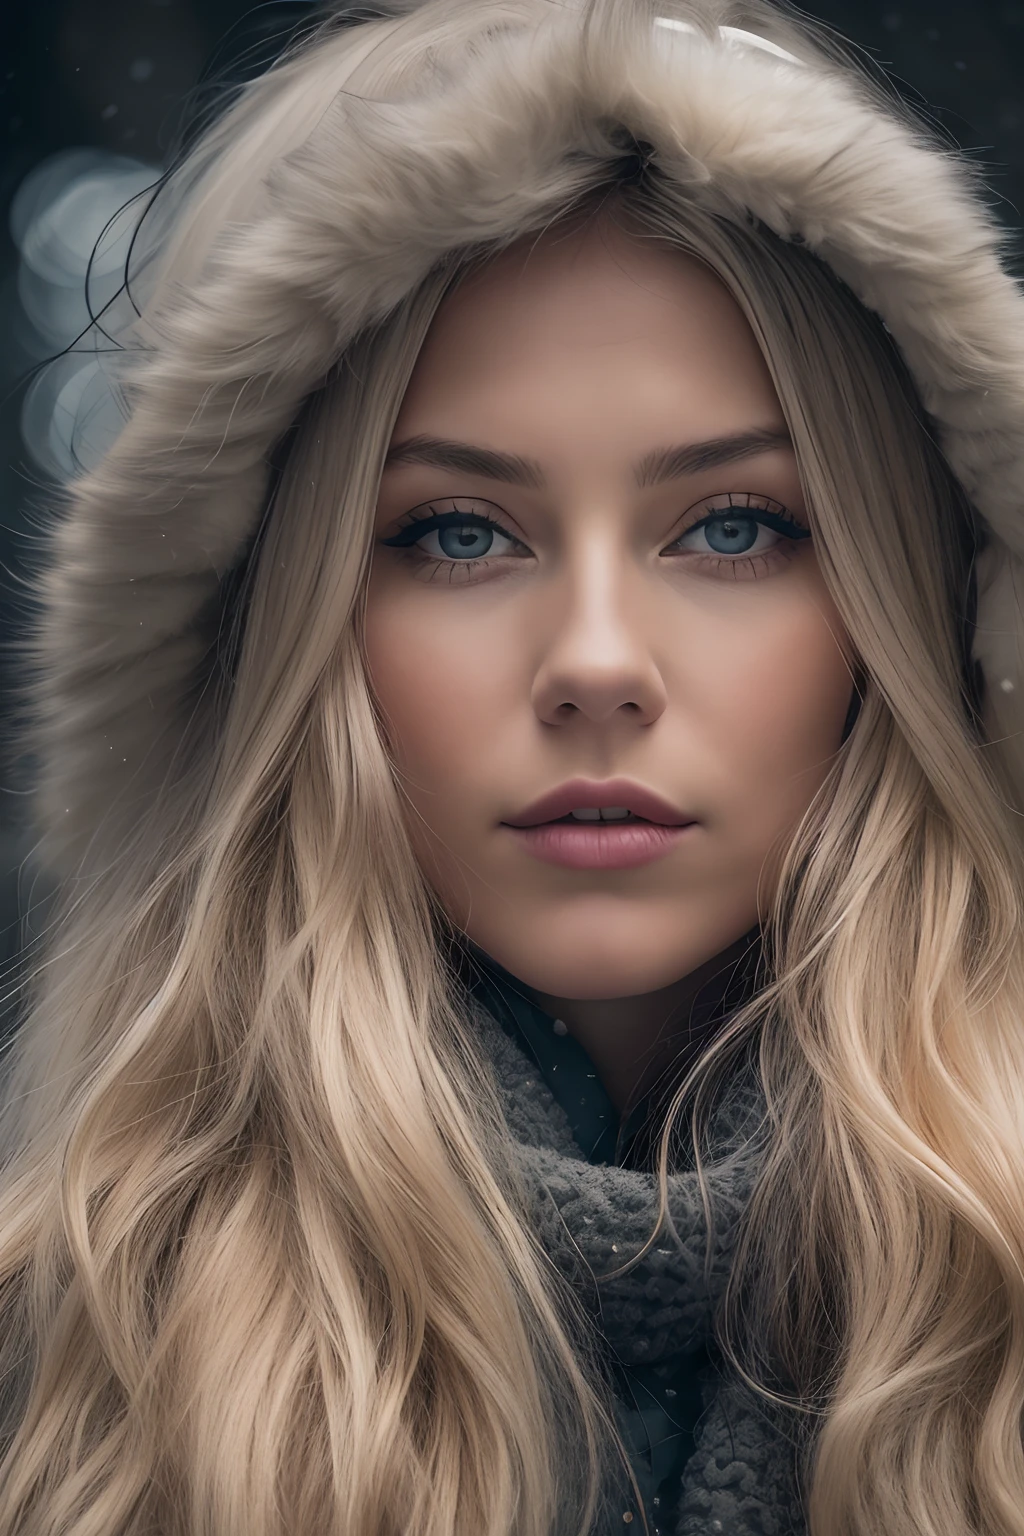 Профессиональное портретное фото красивой норвежской девушки в зимней одежде с длинными волнистыми светлыми волосами, Красивое симметричное лицо, Носите элегантную и теплую зимнюю одежду., Юки, Зан,ультрашарф, детальное лицо,
Потрясающая современная городская среда, Гиперреалистичный вариант, очень подробный, спиральный, острый фокус, глубина поля, Средний план, нффсв, 8К, Идеальные глаза, глаза, высокий контраст